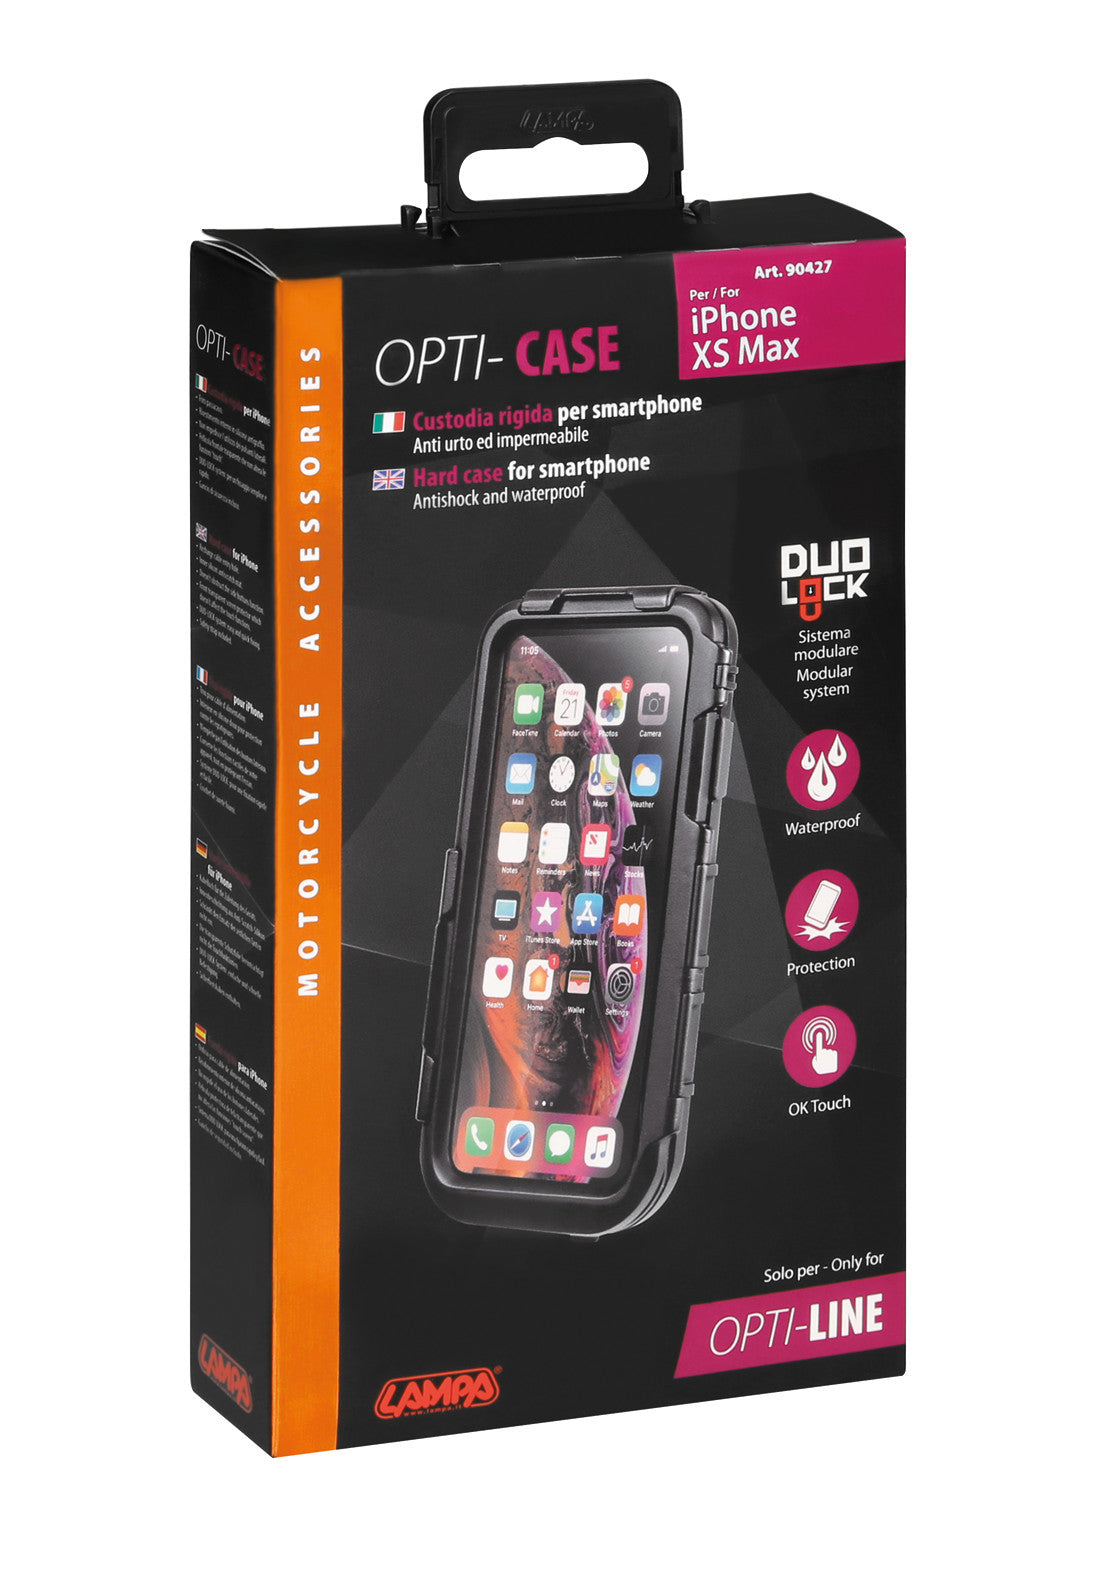 Opti Case, custodia rigida per smartphone - iPhone XS Max